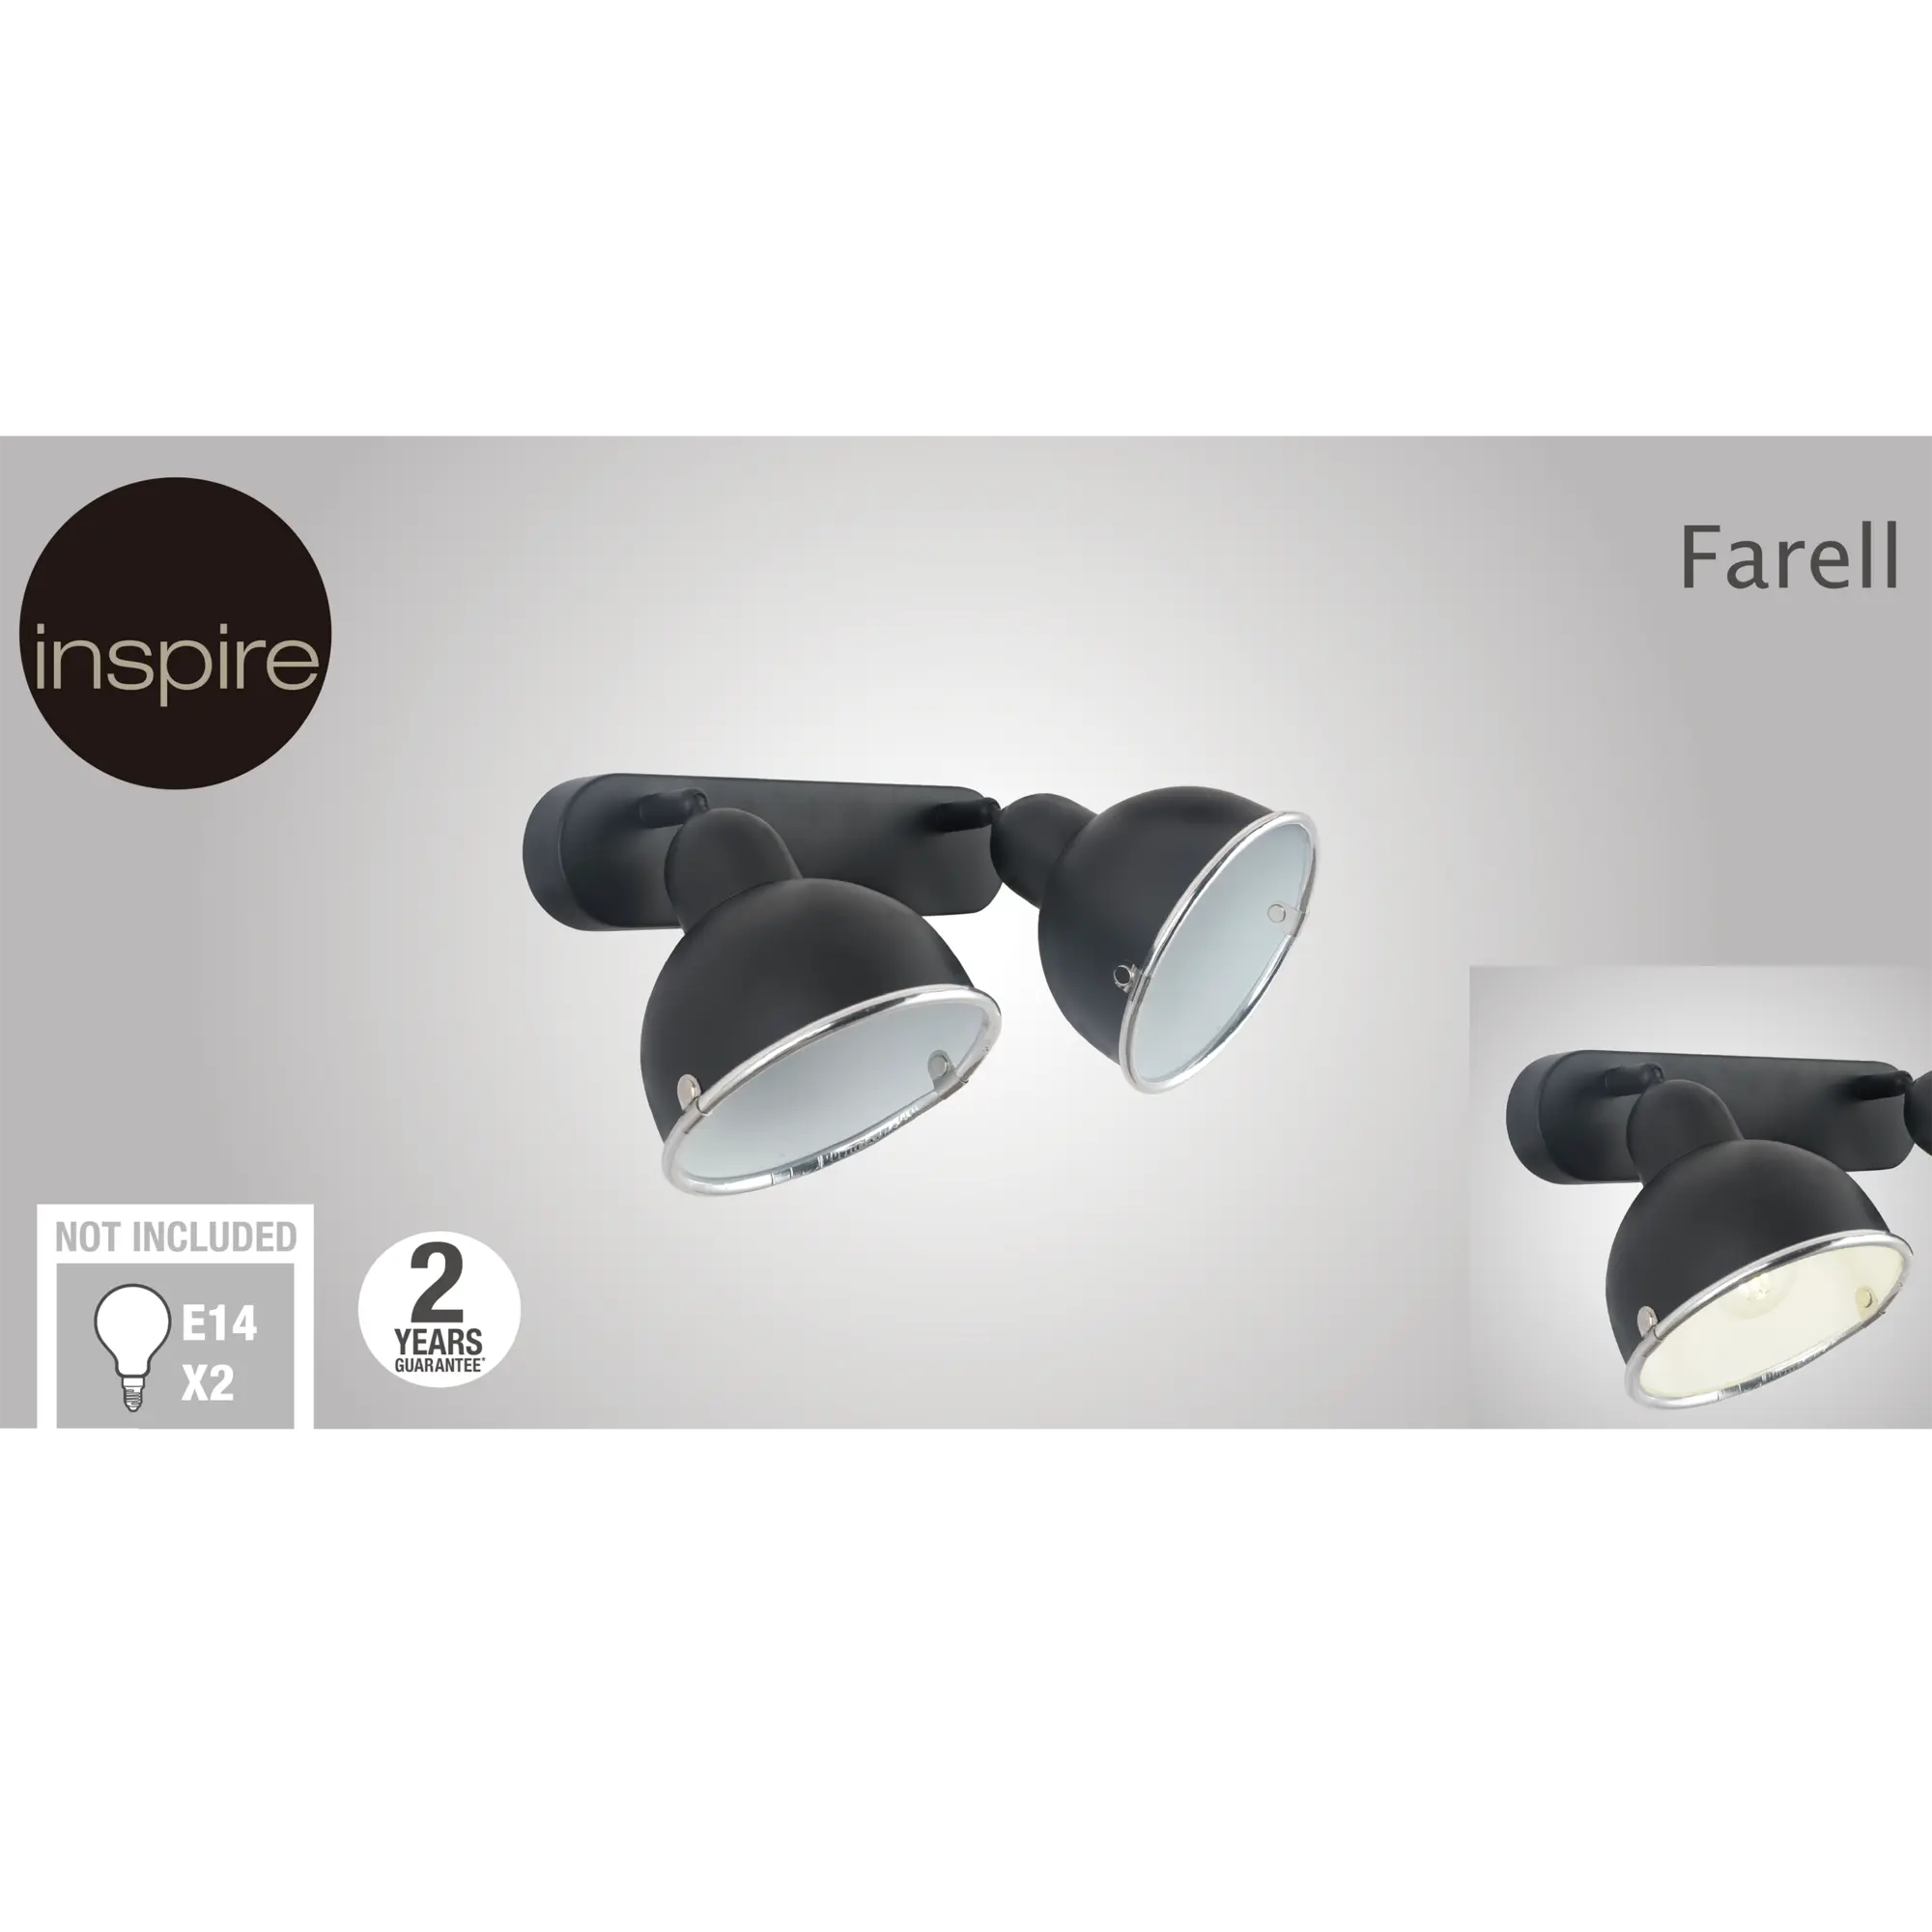 Faretto Farell nero in metallo E14 INSPIRE - 5